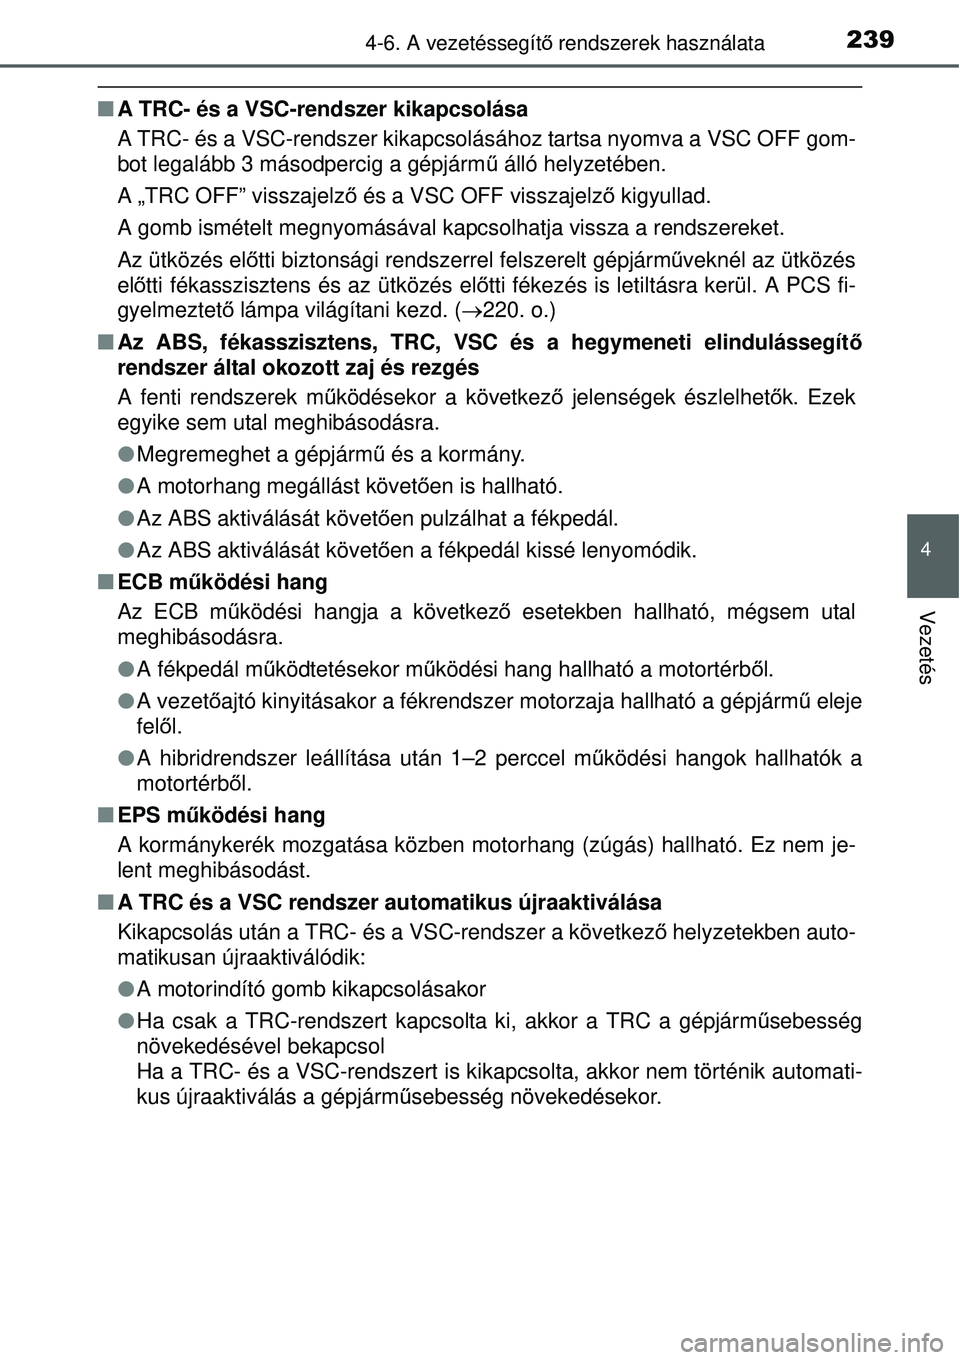 TOYOTA YARIS HYBRID 2015  Kezelési útmutató (in Hungarian) 2394-6. A vezetéssegítő rendszerek használata
4
Vezetés
 A TRC- és a VSC-rendszer kikapcsolása
A TRC- és a VSC-rendszer kikapcsolásához tartsa nyomva a VSC OFF gom-
bot legalább 3 másod